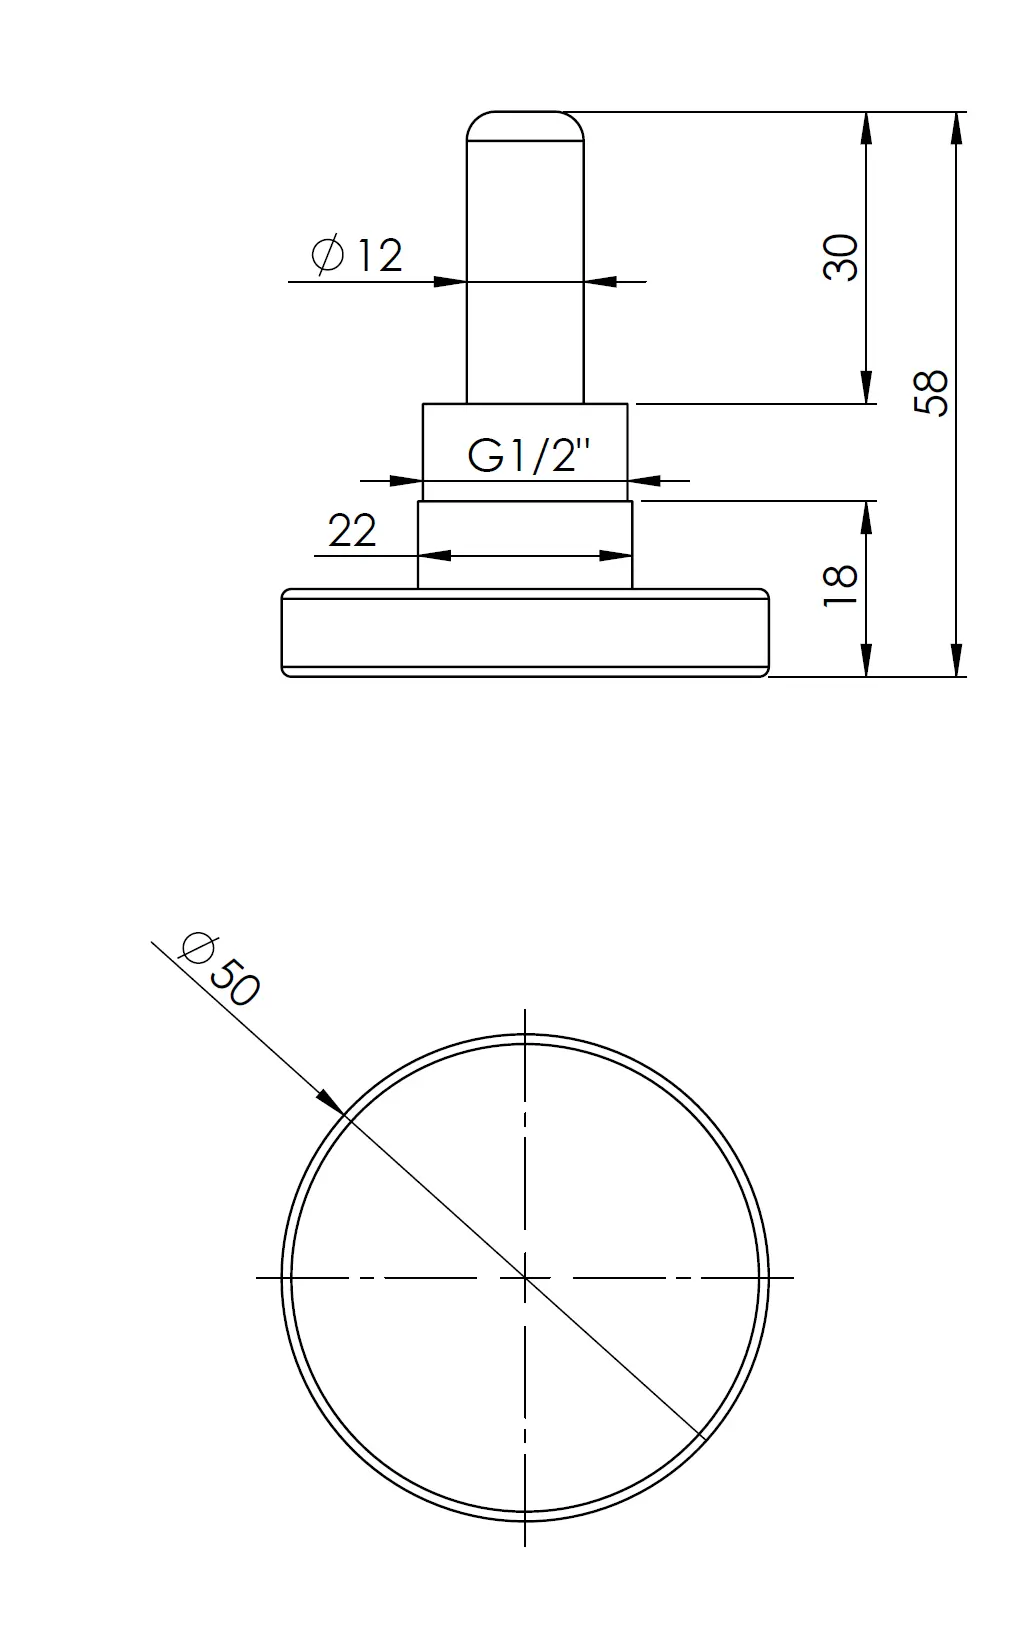 Termometr bimetaliczny BiTh 50, fi50 mm, 0÷120°C, L 40 mm, G1/2", ax, kl. 2 - budowa